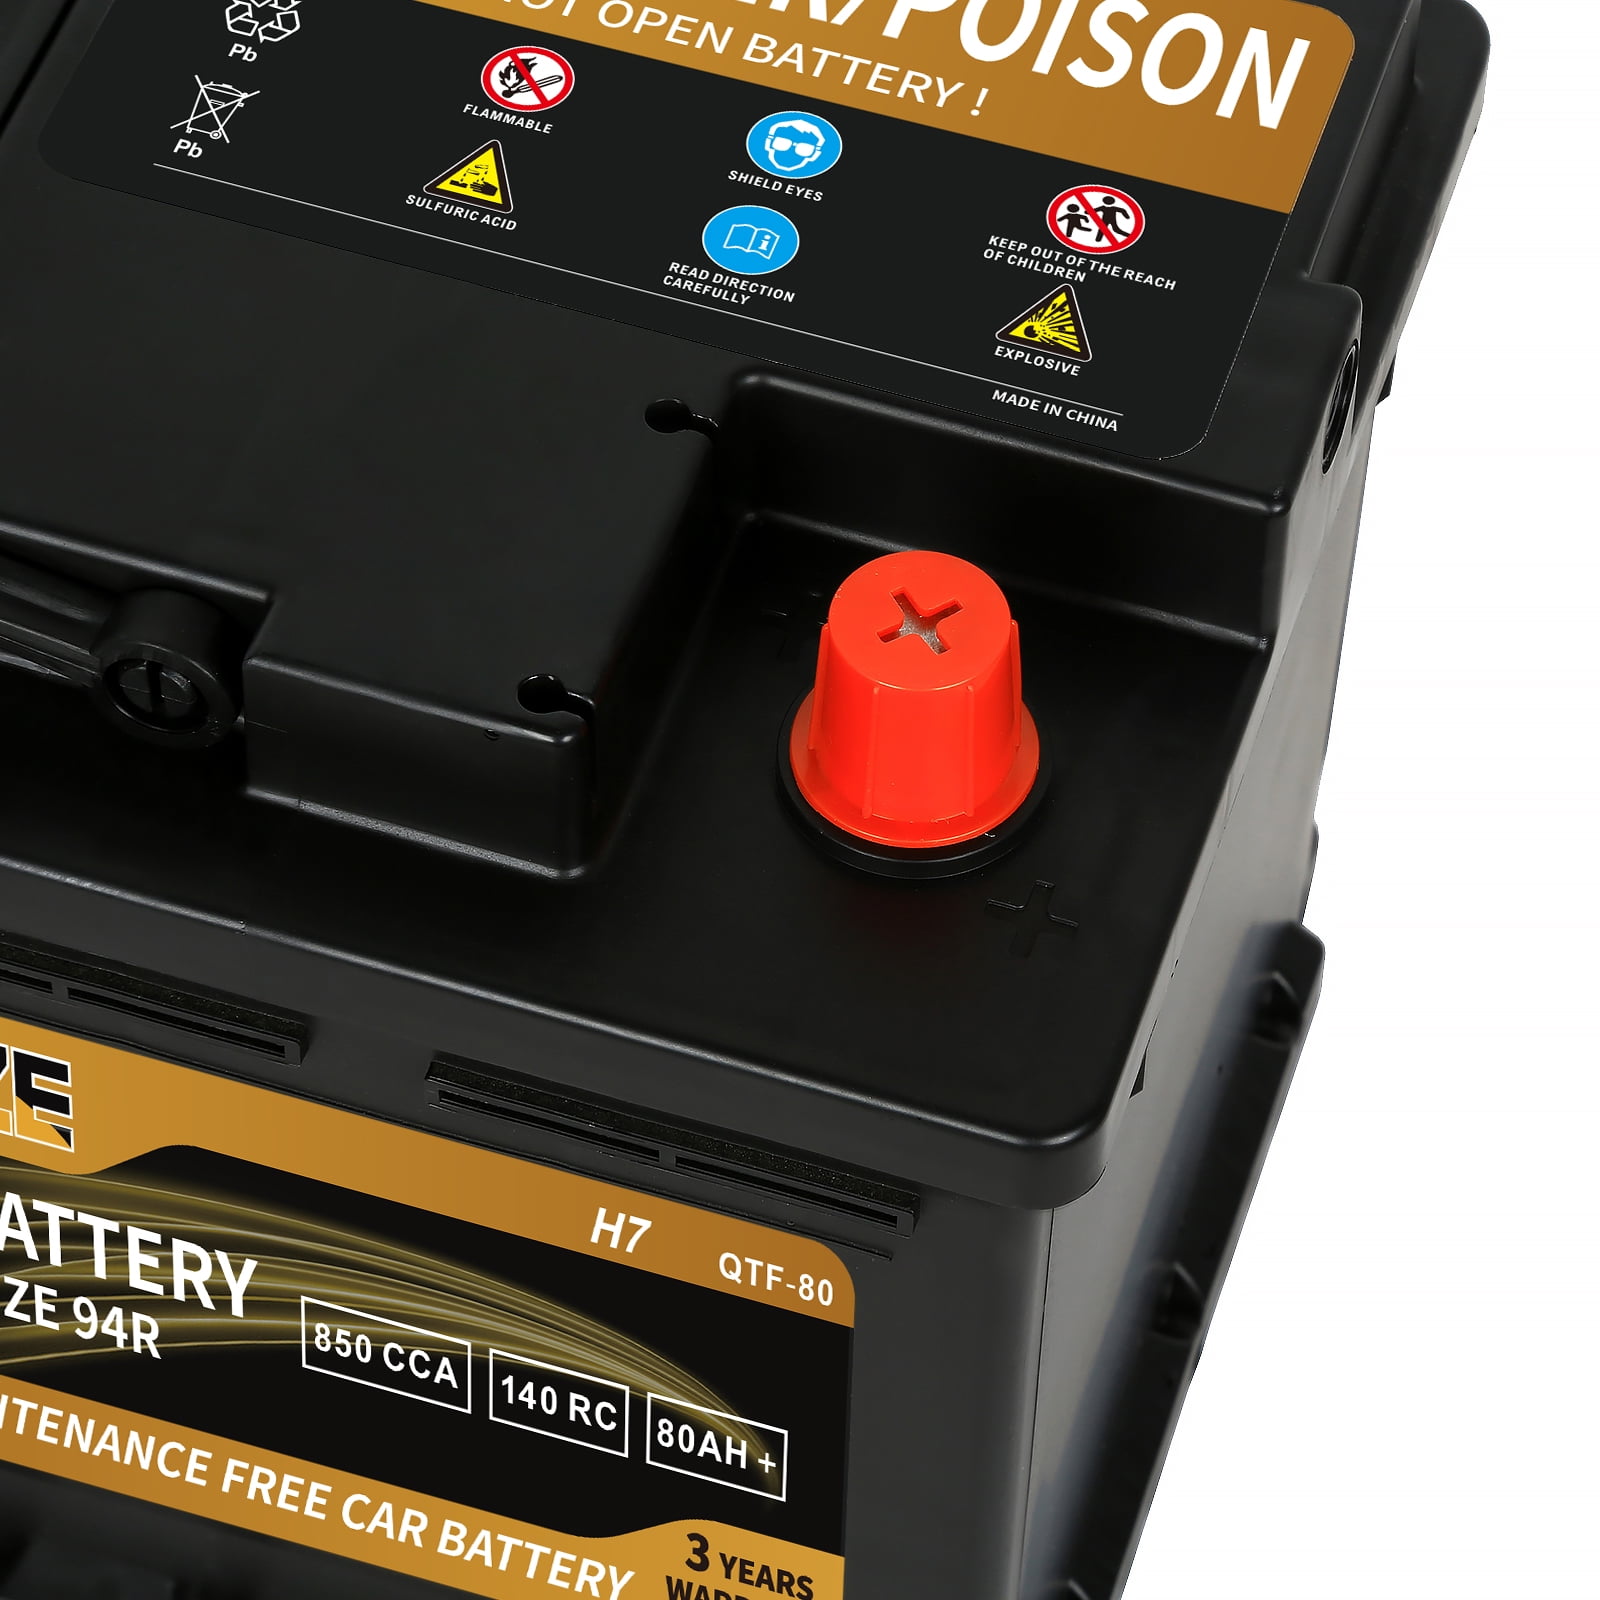  UPLUS BCI Group 48 Car Battery, AGM-L70-M Maintenance Free 12V  70Ah Premium AGM Batteries H6 L3 Automotive Battery, 760CCA, 80RC :  Automotive